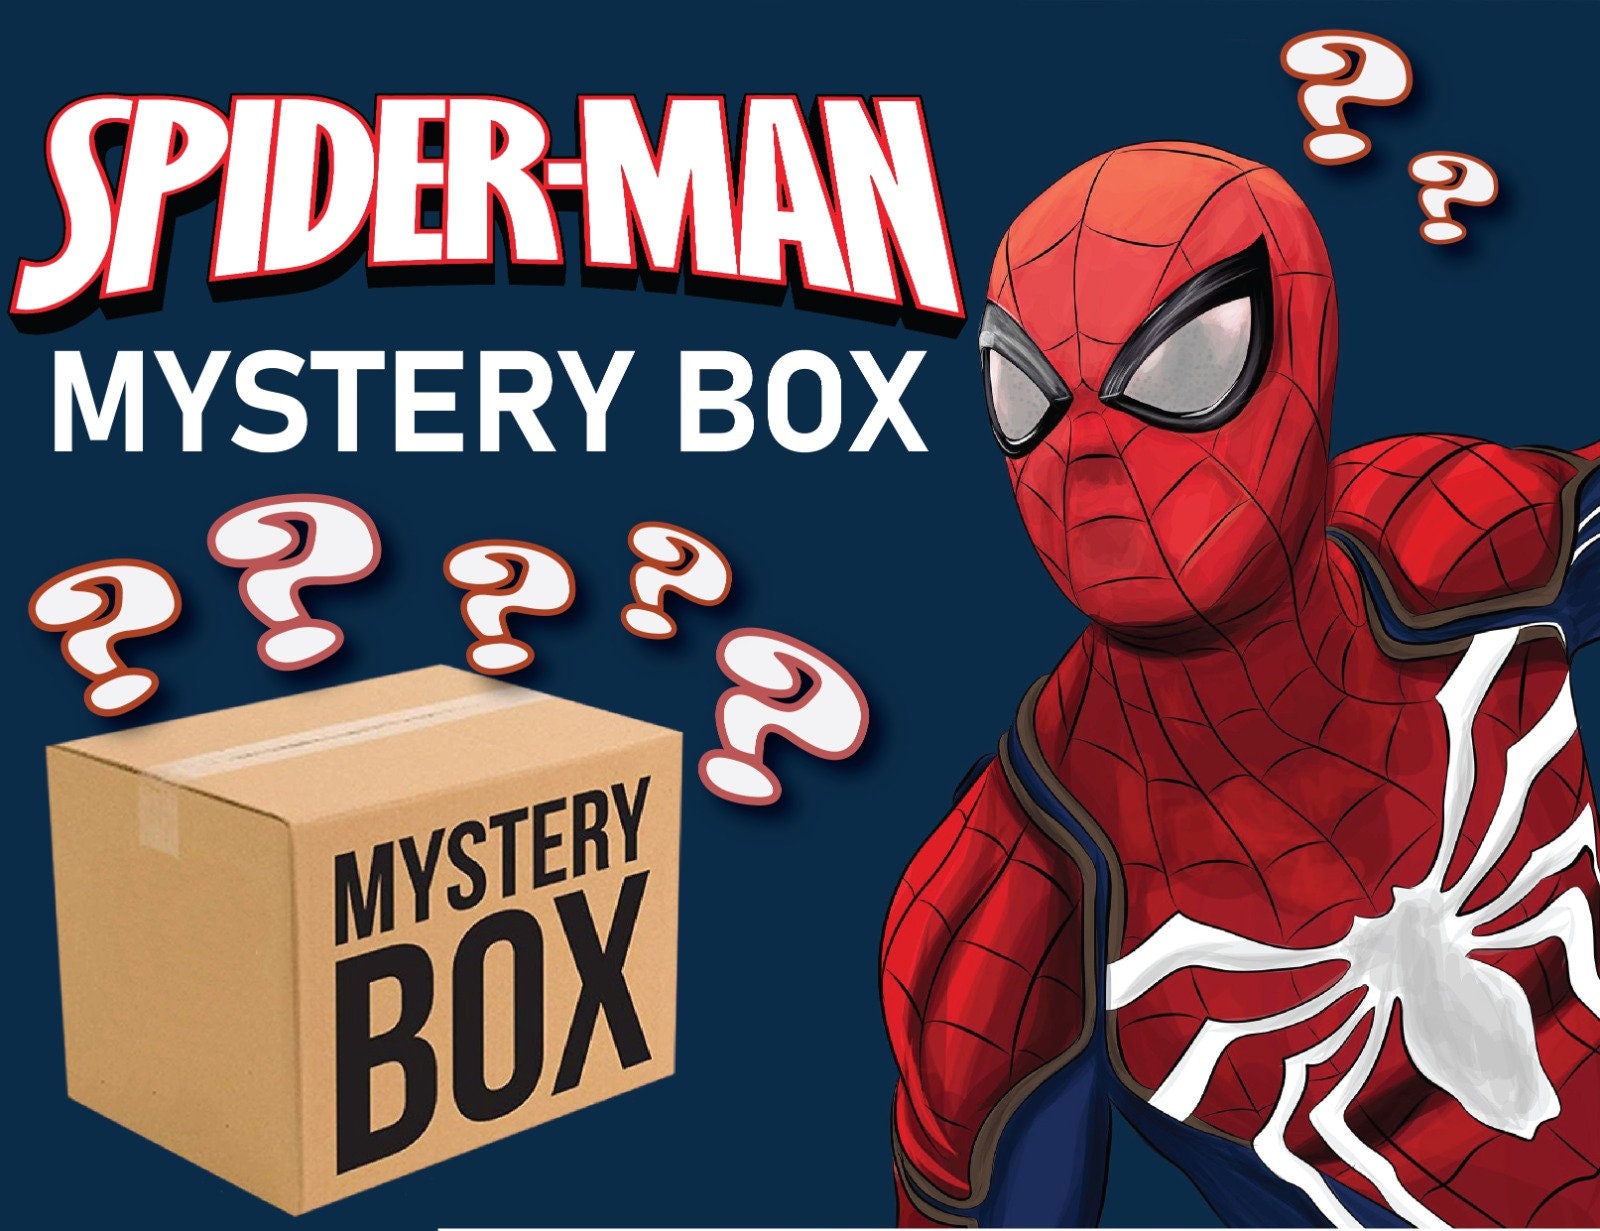 NBA mystery box Nba surprise box Personalized Nba mystery box Nba present  Nba inspired Nba surprise box Choose box size (S, M, L, XL, XXL)